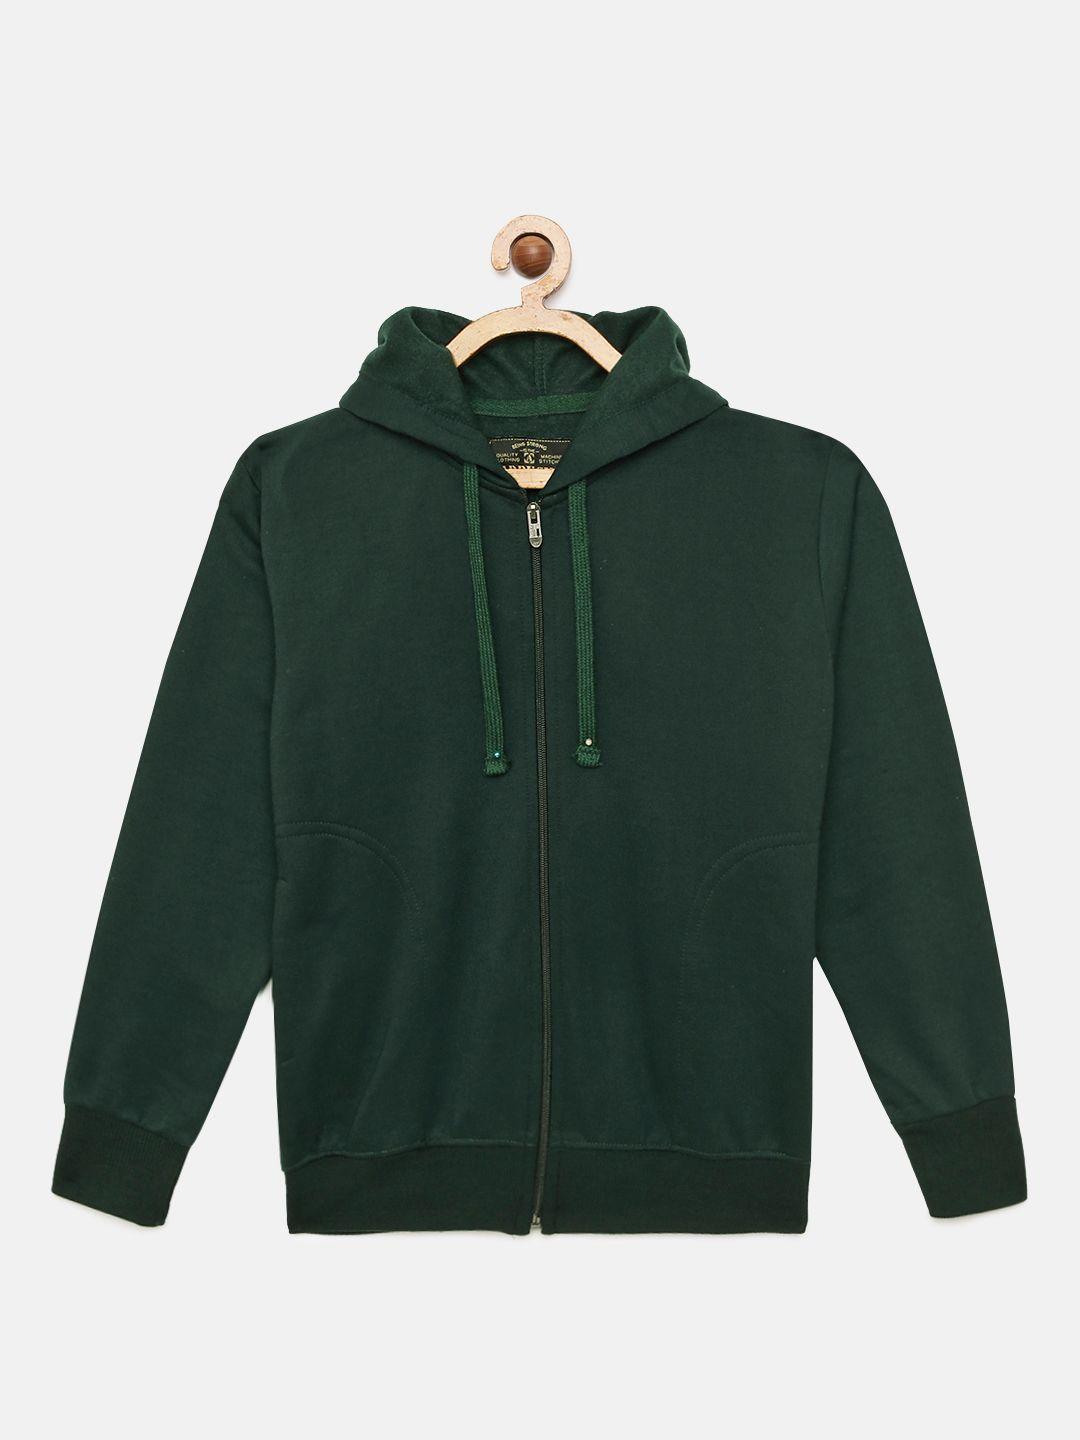 adbucks-boys-green-solid-hooded-sweatshirt